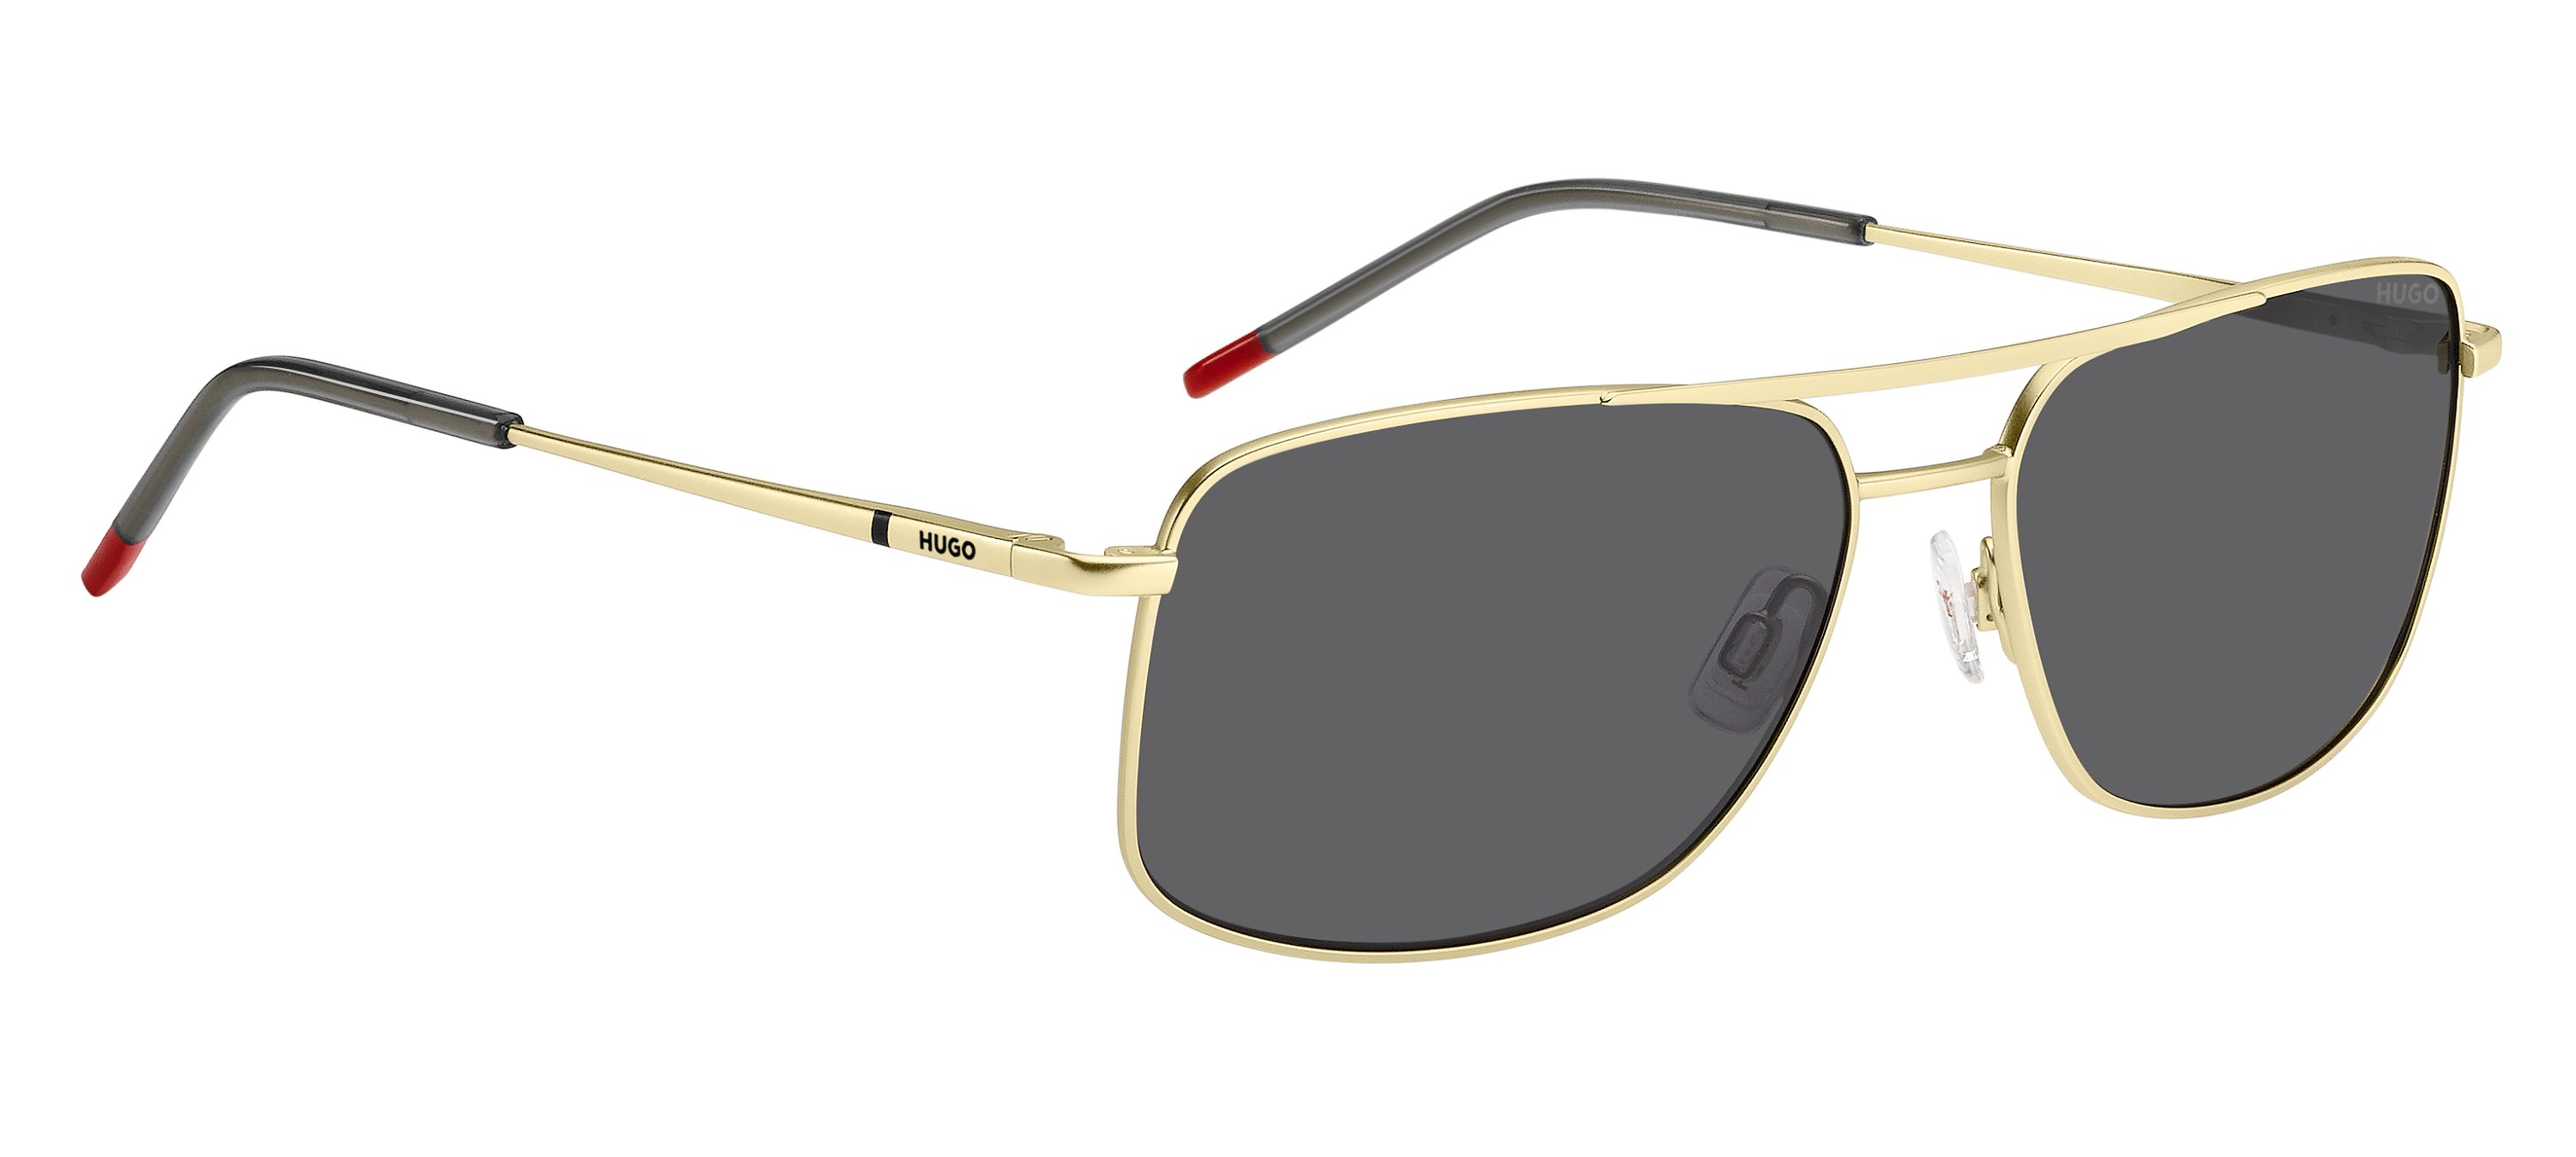 Das Bild zeigt die Sonnenbrille HG1287/S 2F7 von der Marke Hugo in gold/grau.